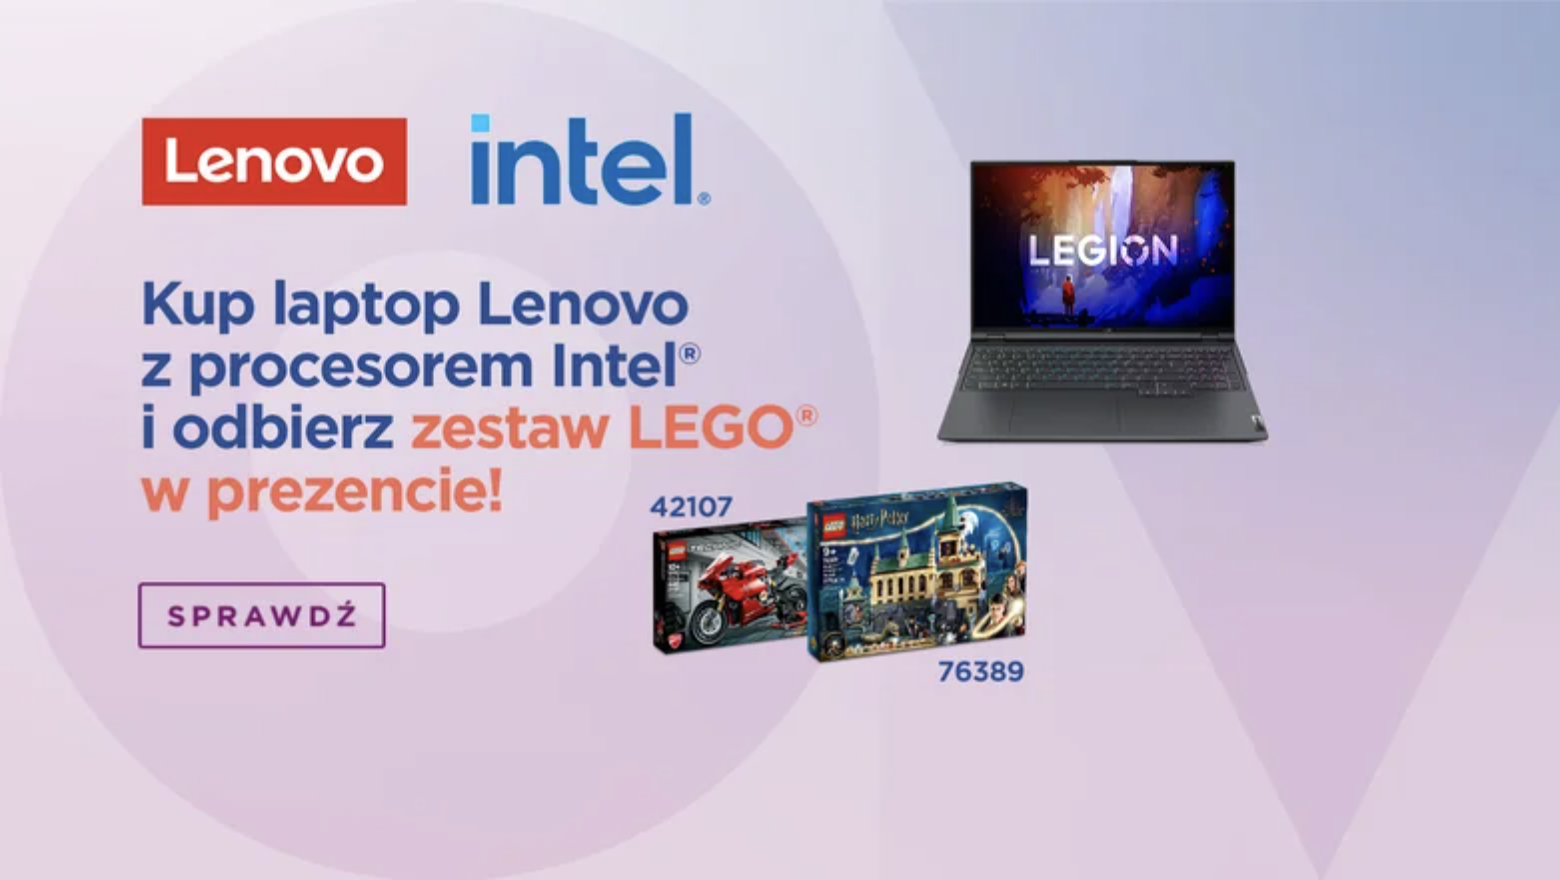 Promocja Lenovo na dzień dziecka